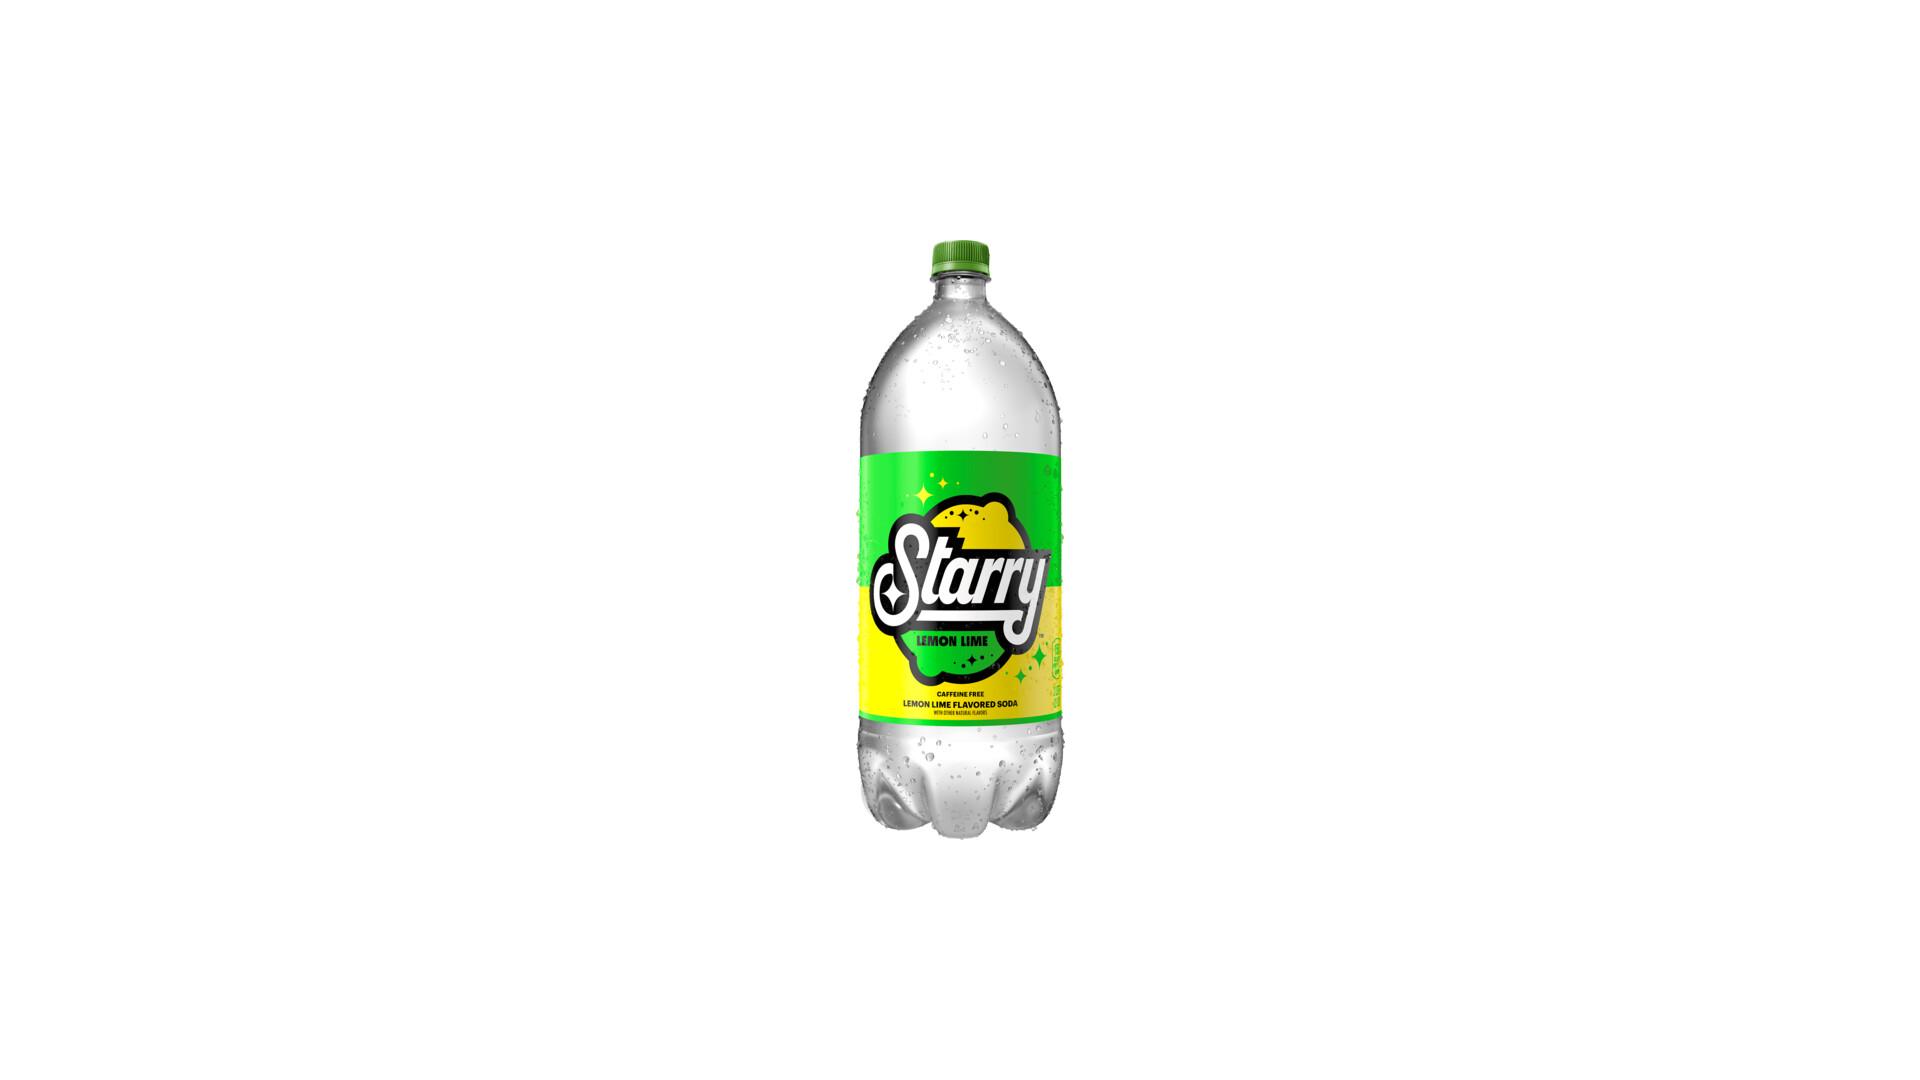 Starry Bottle 2L